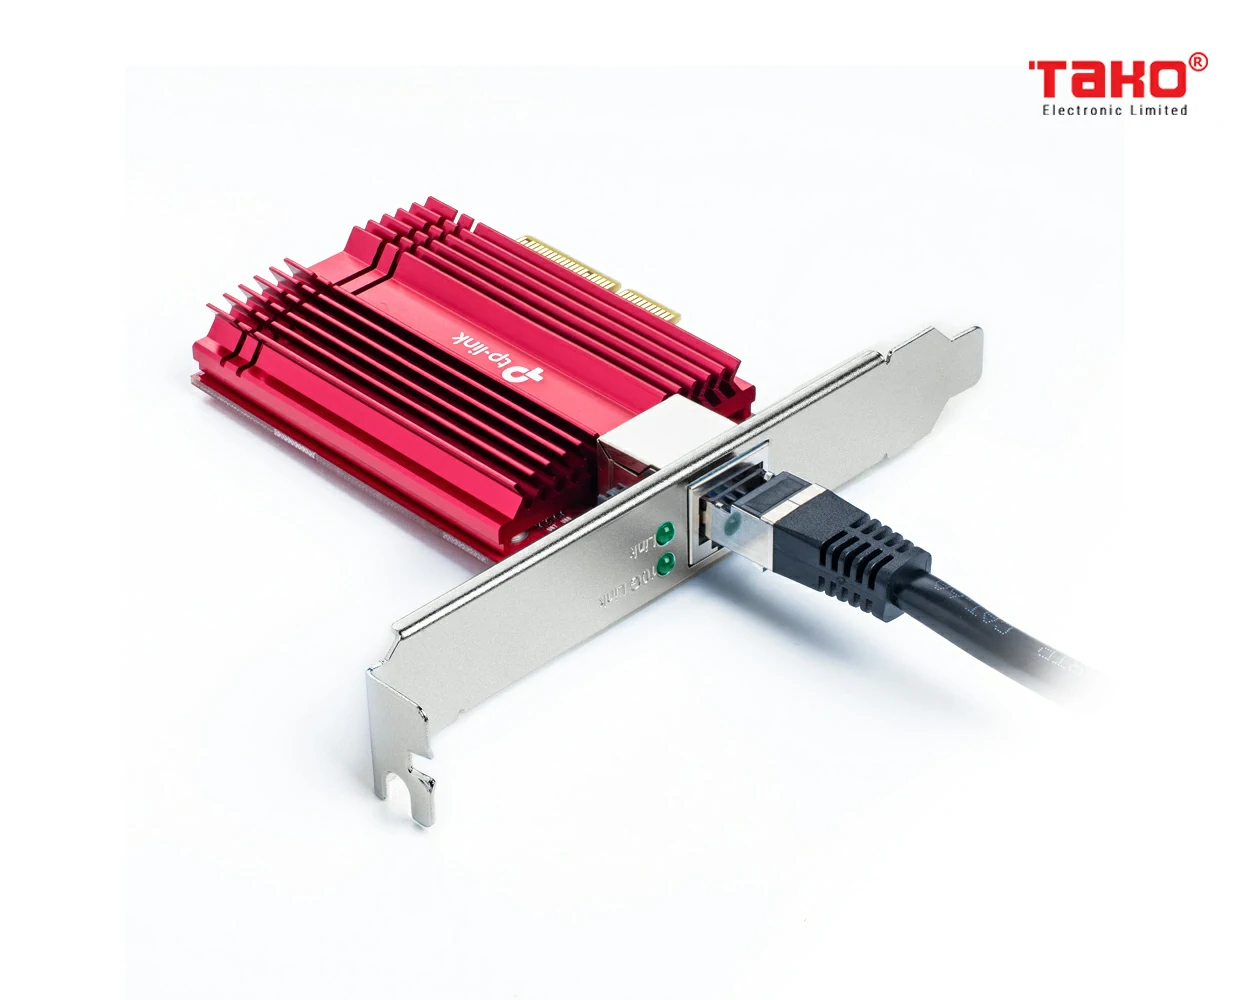 TX401 10 Gigabit PCI Express Network Adapter 3